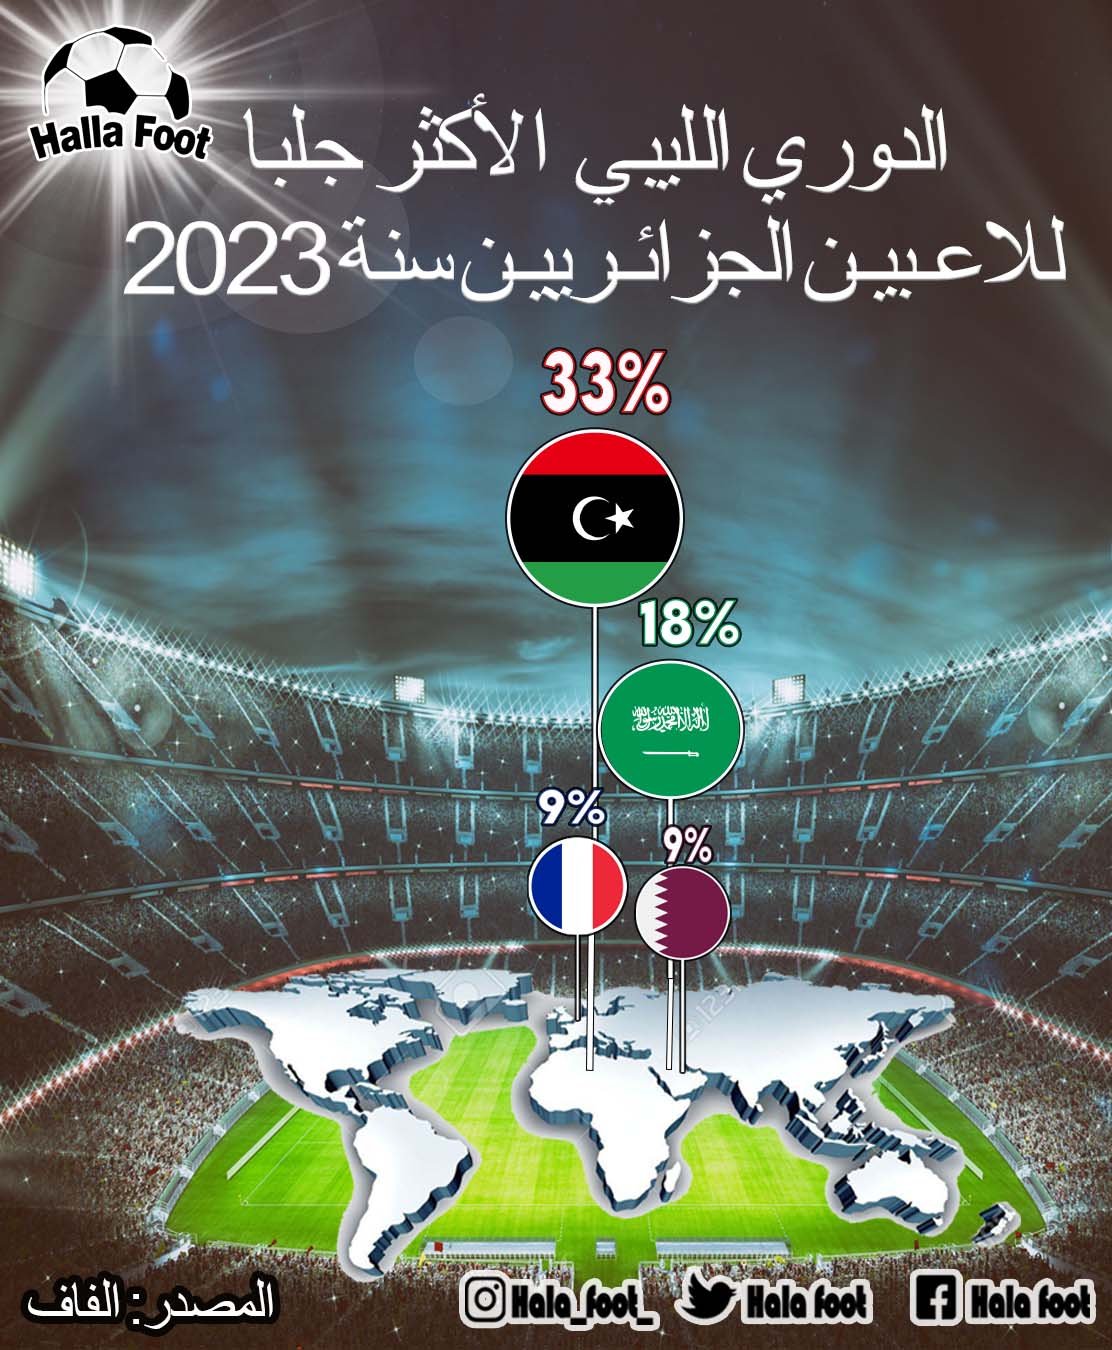 الدوري الليبي الواجهة الأولى للمحترفين الجزائريين لسنة 2023